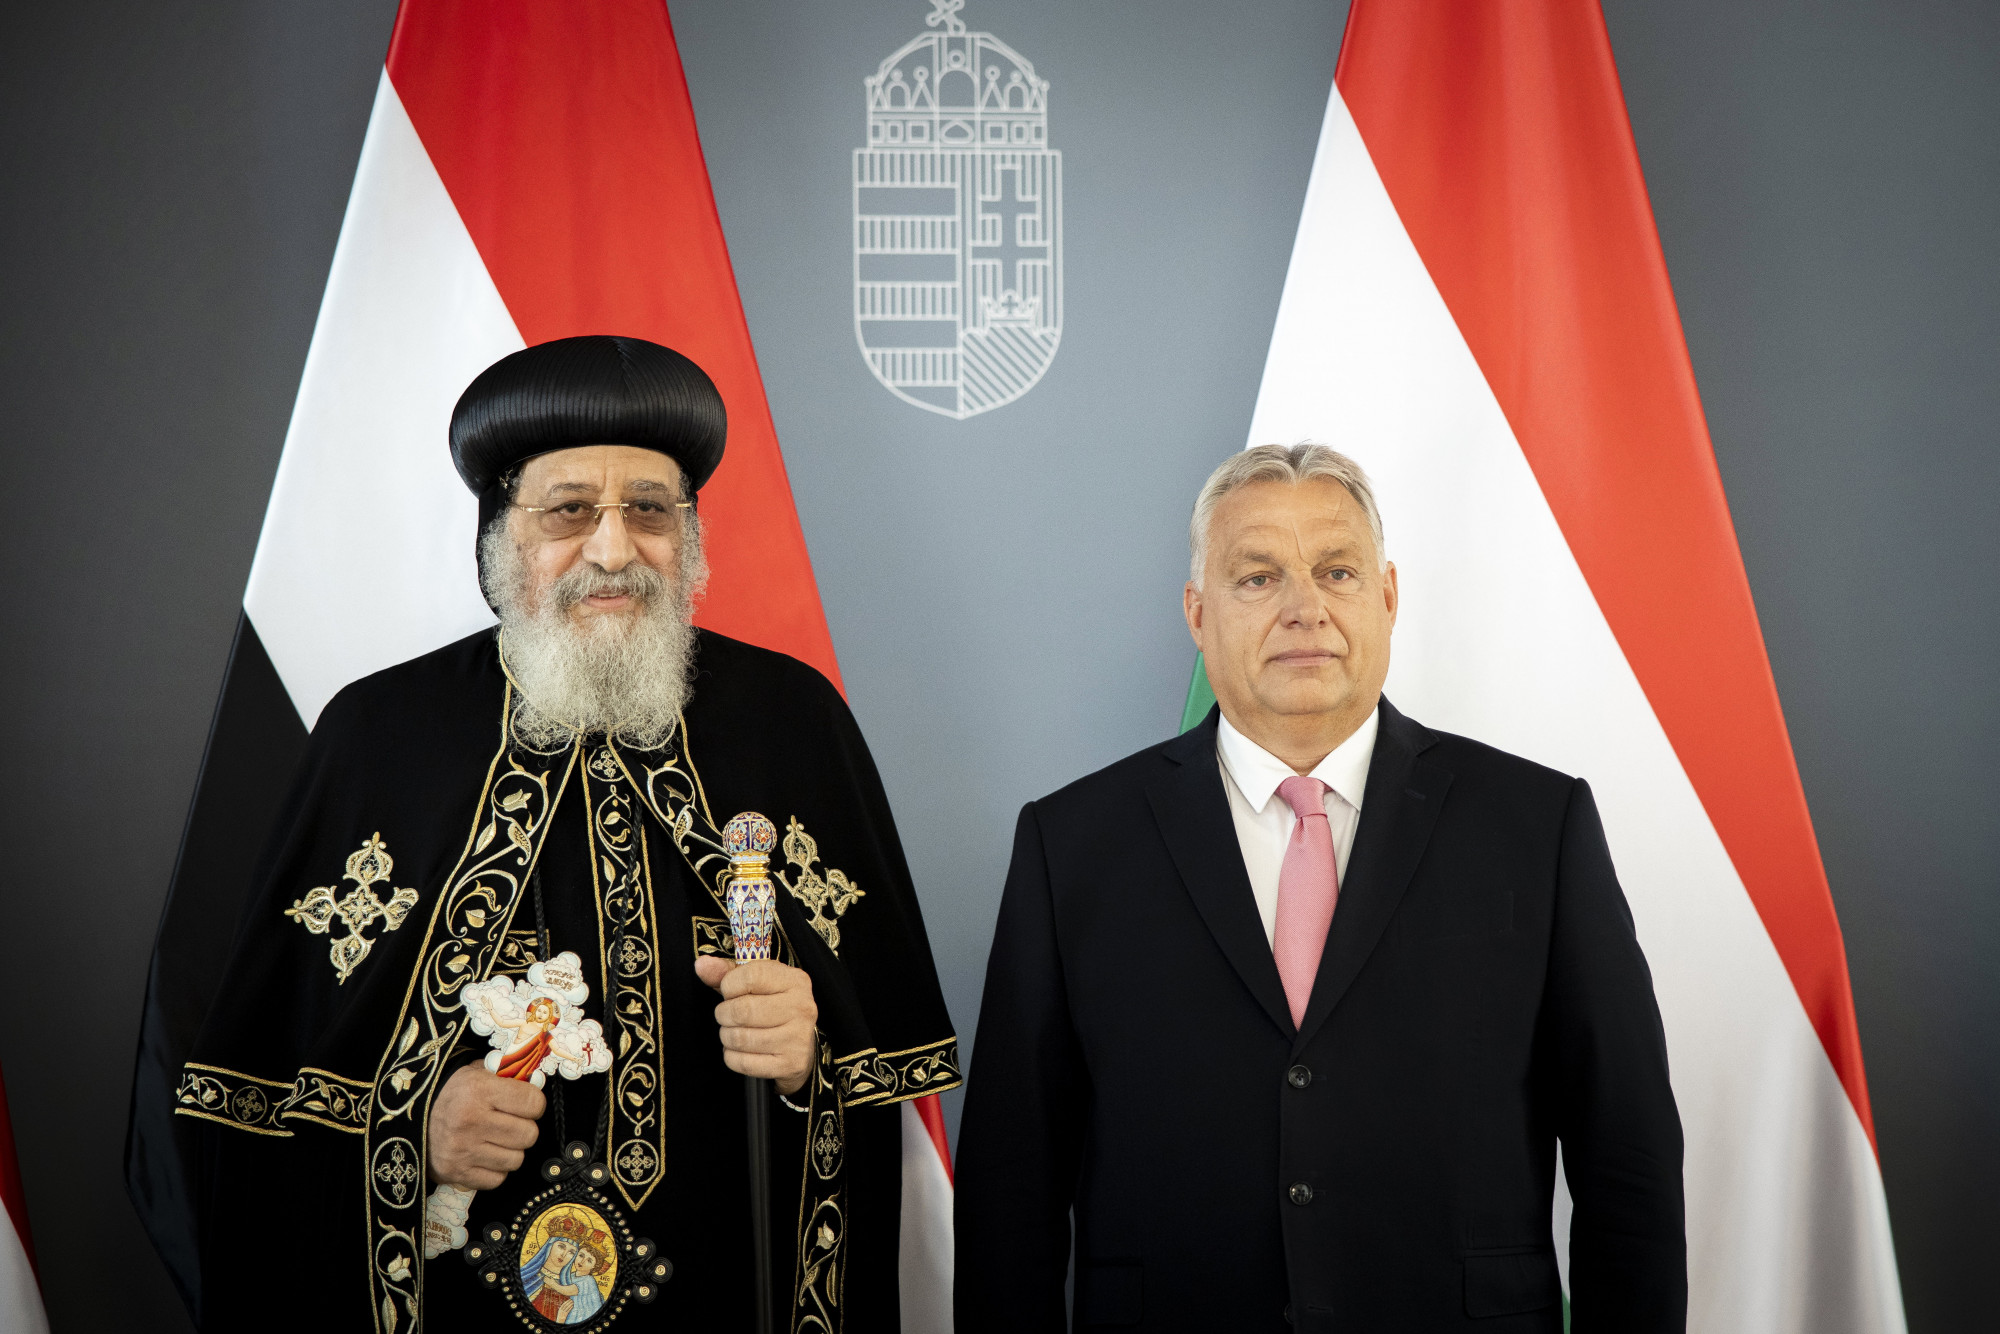 II. Tavadrosz kopt pápát fogadta Orbán